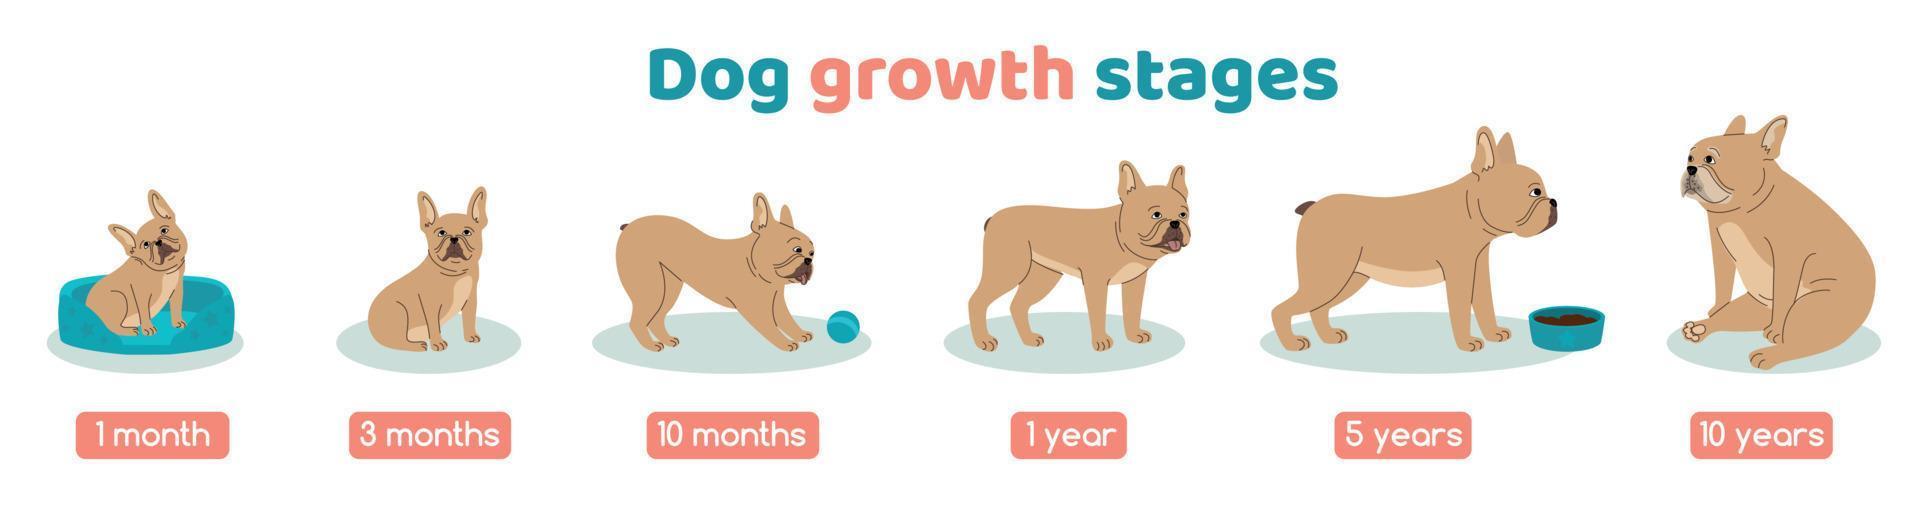 ensemble de stades de croissance du chien vecteur